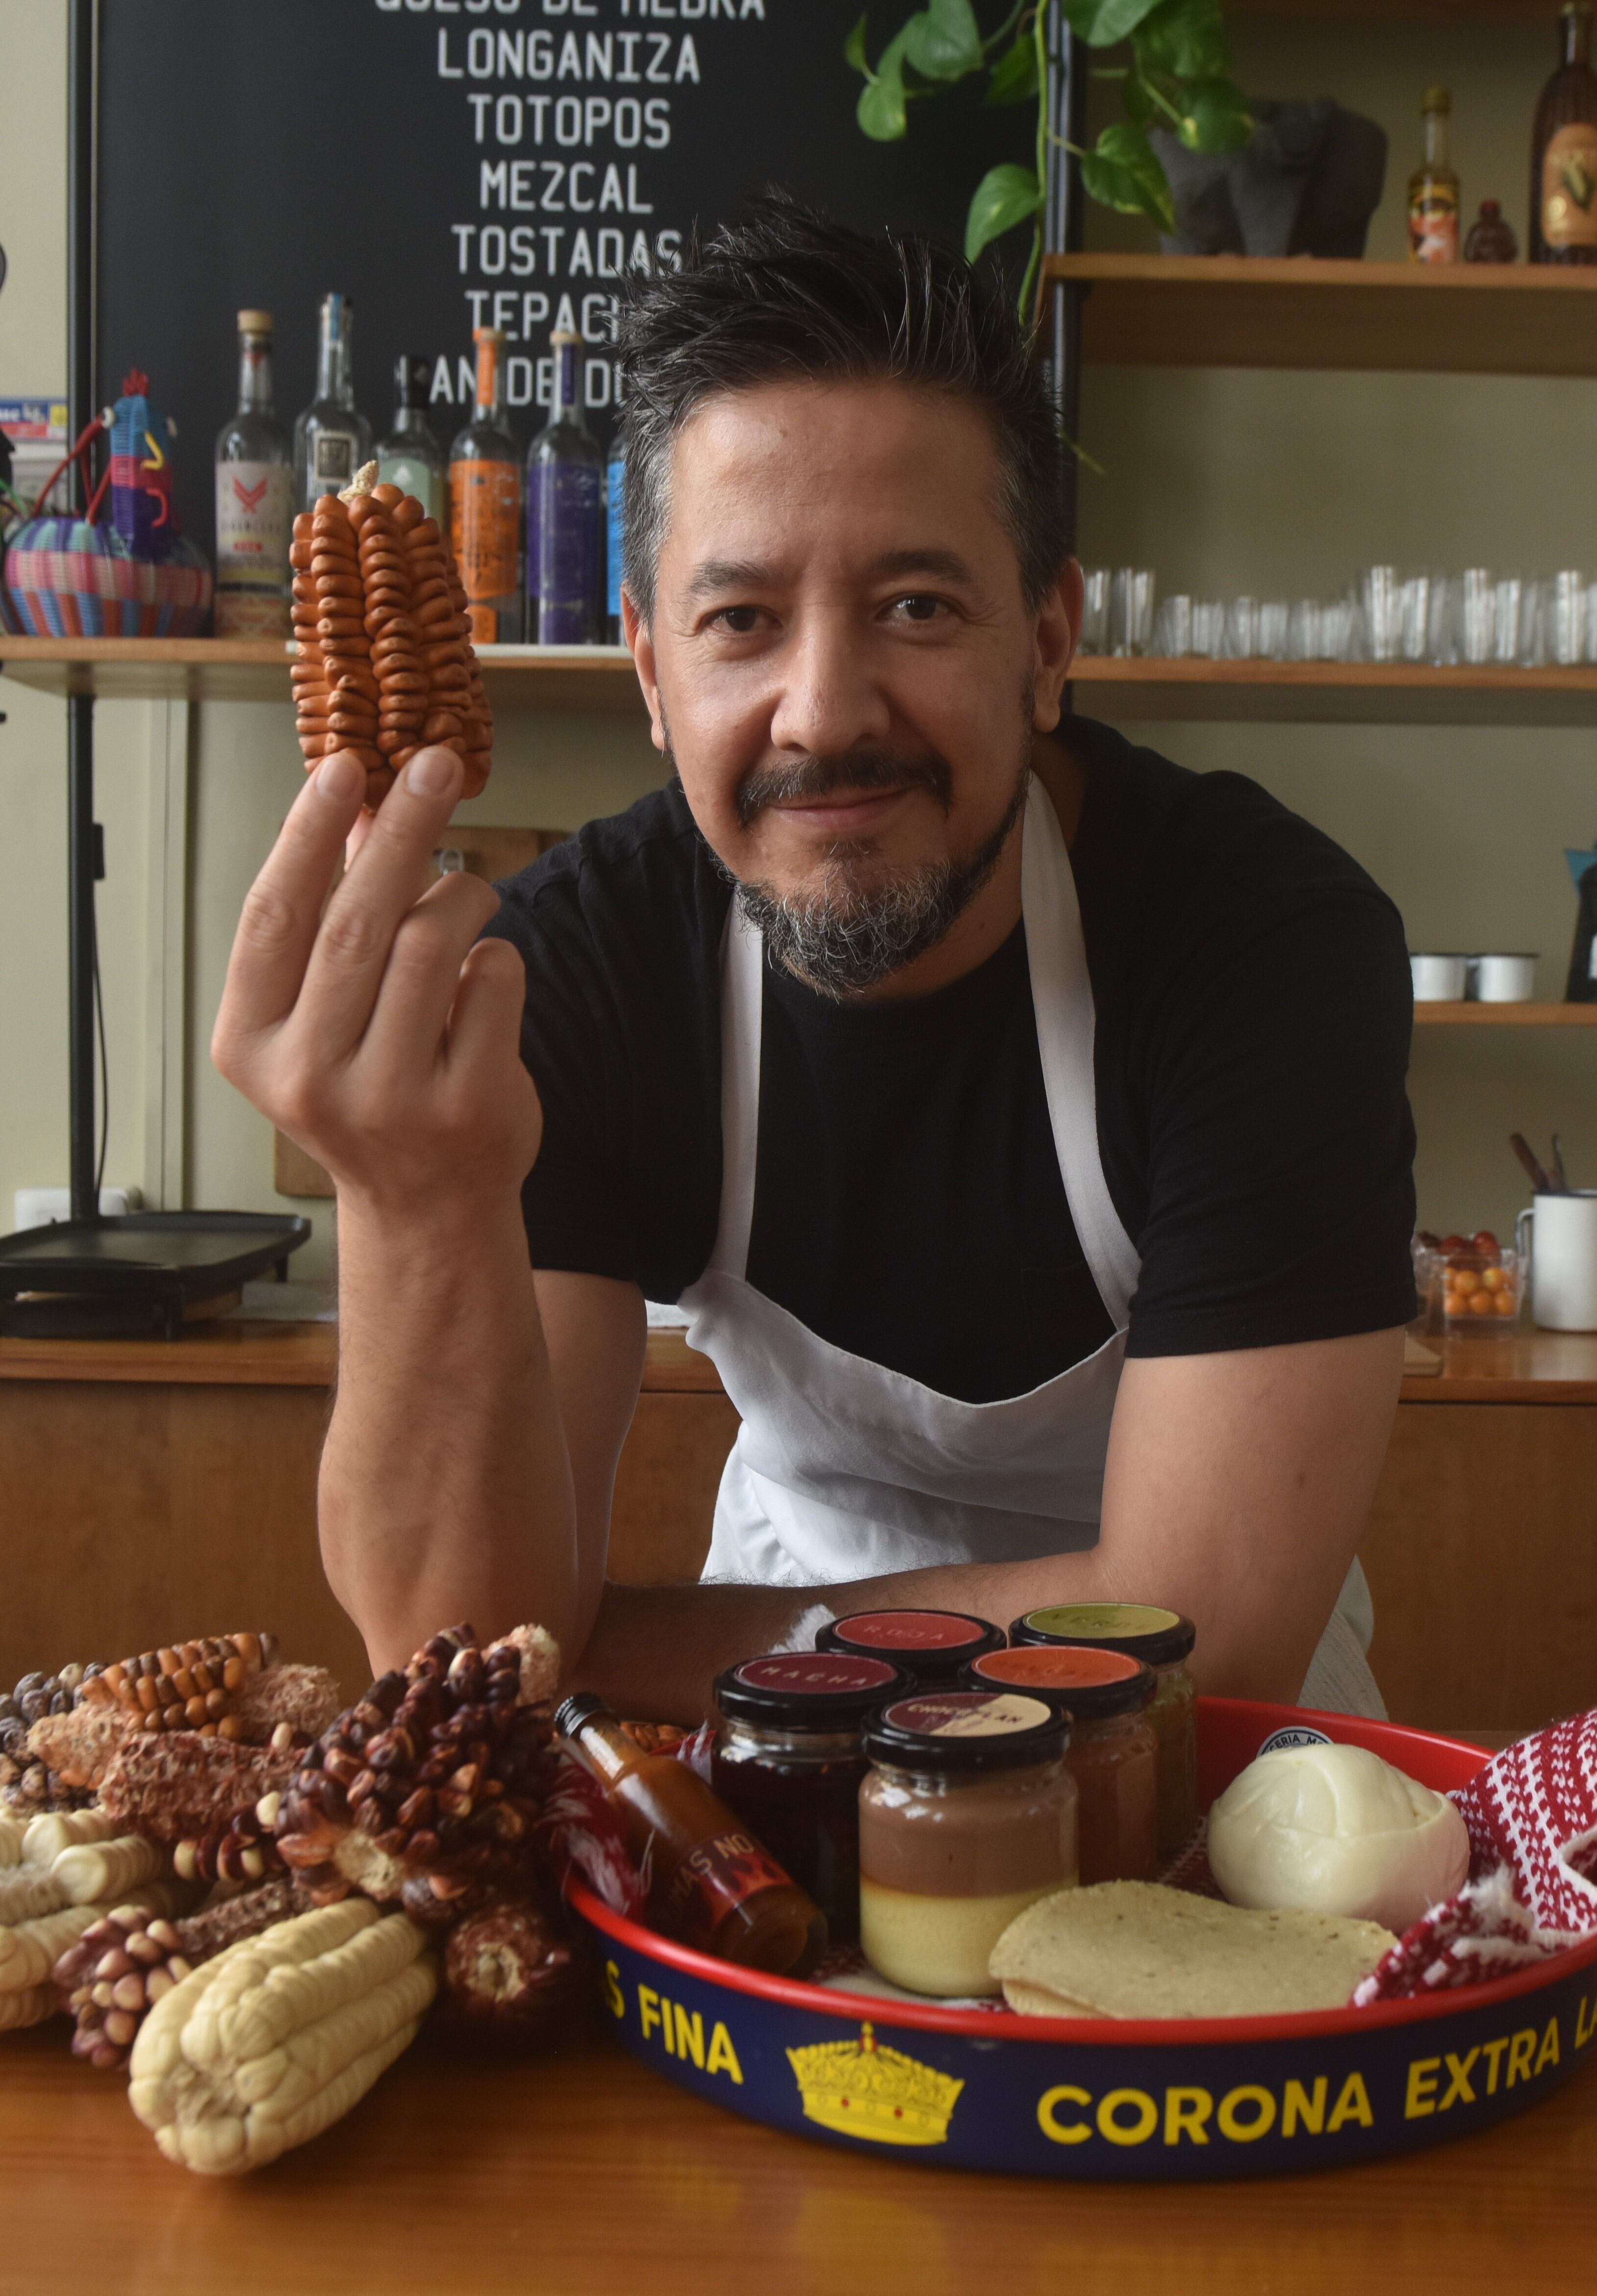 El chef Emilio Macías tenía un sueño: traer al Perú -país que lo acogió con cariño-los sabores de su natal México. (Javier Zapata)